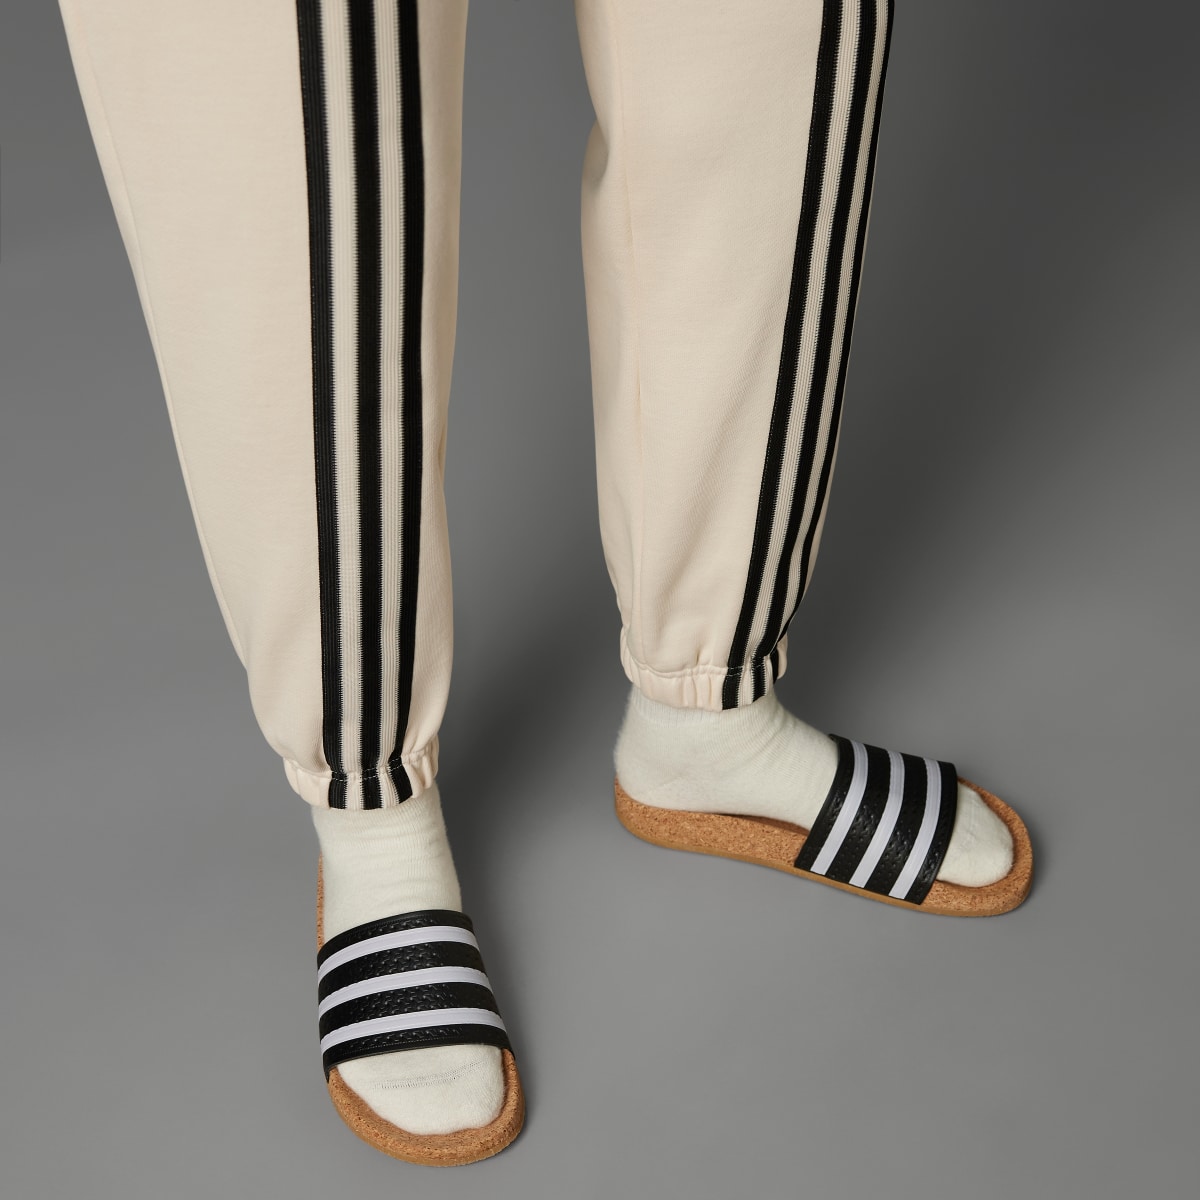 Adidas Pantalon de survêtement 3 bandes Adicolor 70s. 7